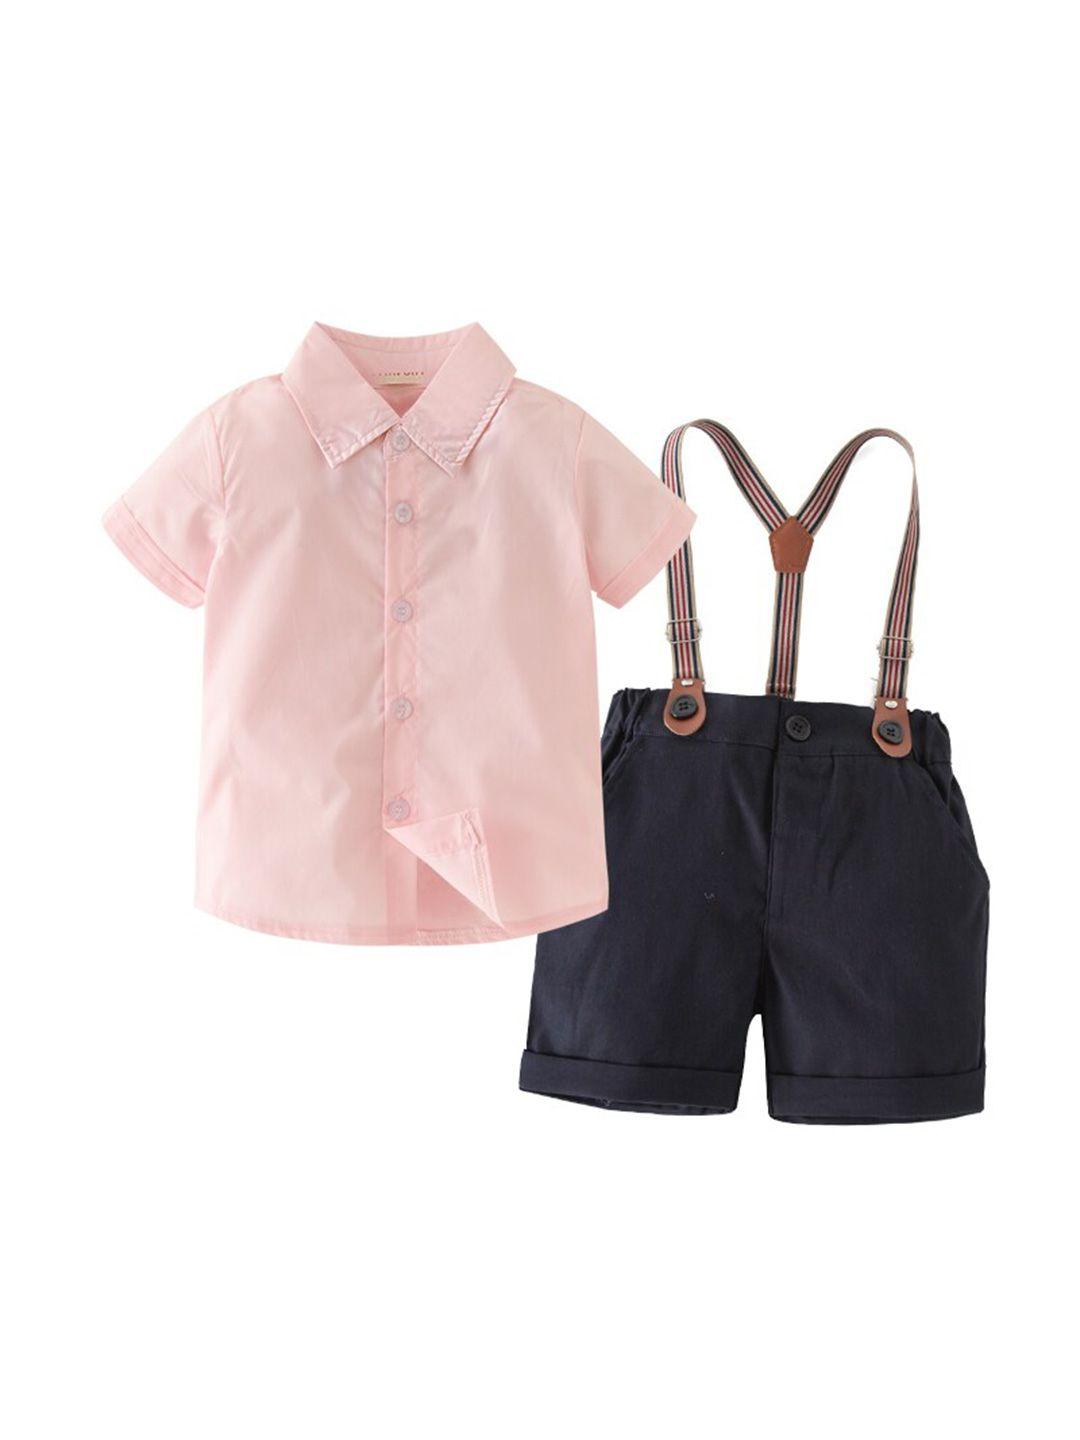 stylecast-boys-pink-shirt-with-shorts-clothing-set